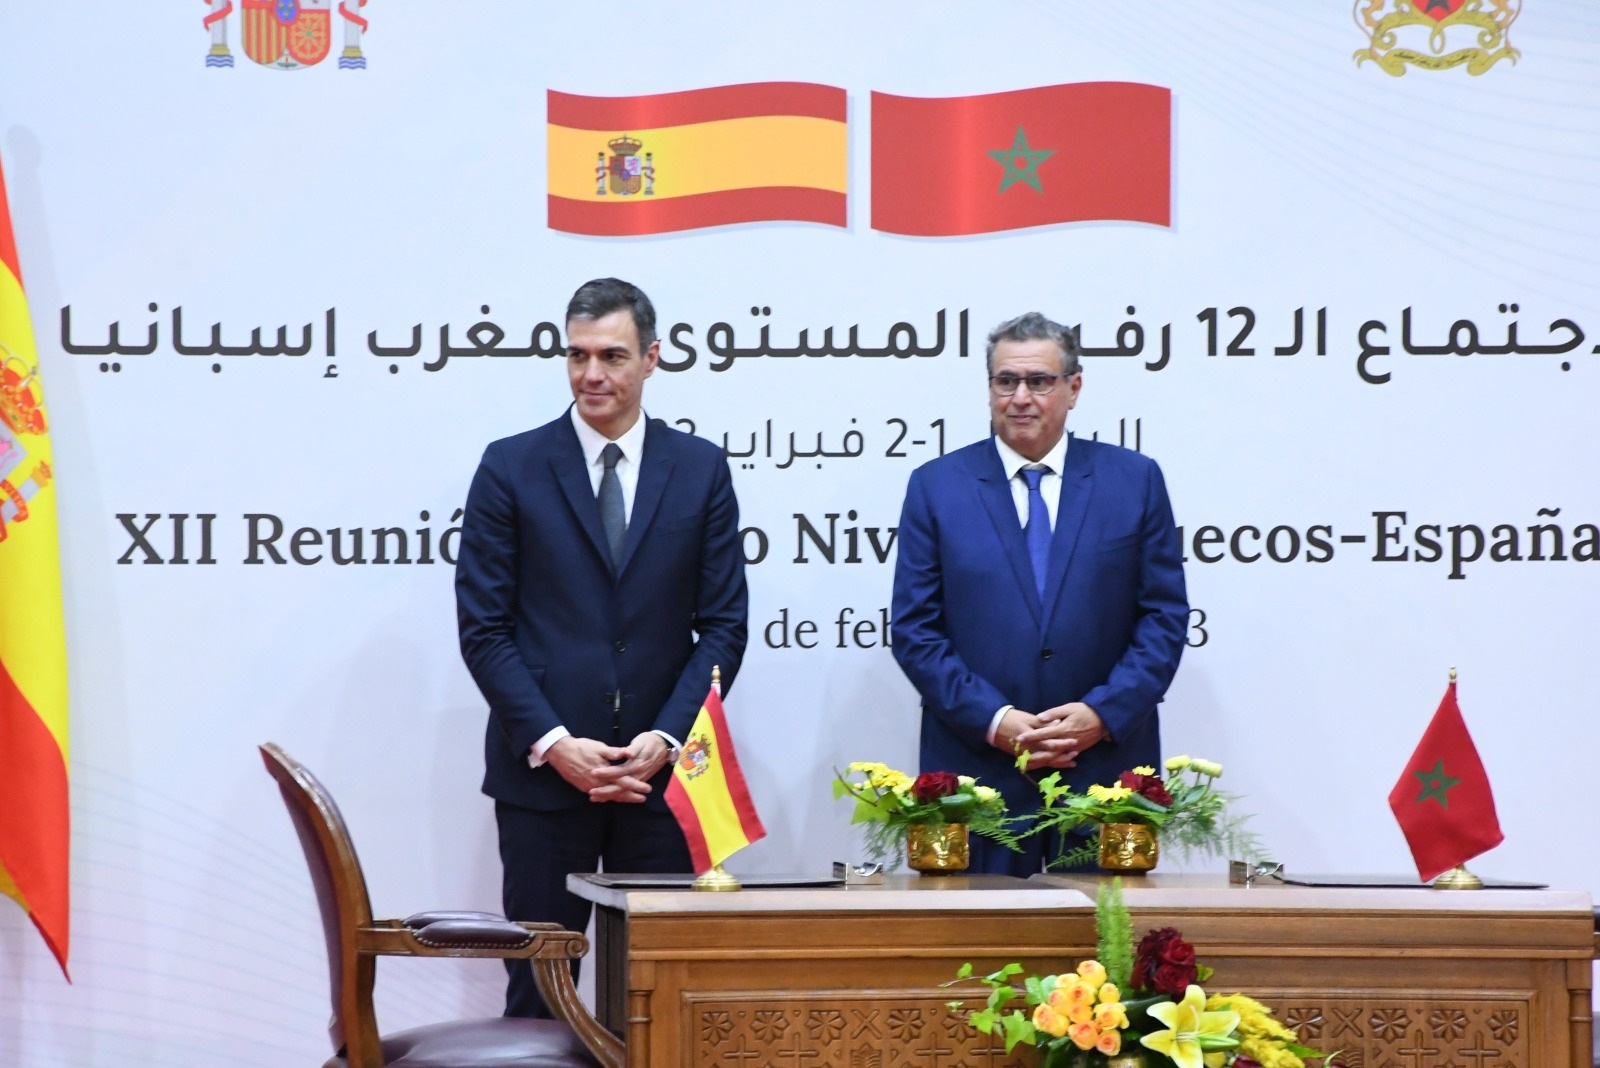 Clôture de la réunion de haut niveau Maroc-Espagne : Les détails de la déclaration conjointe